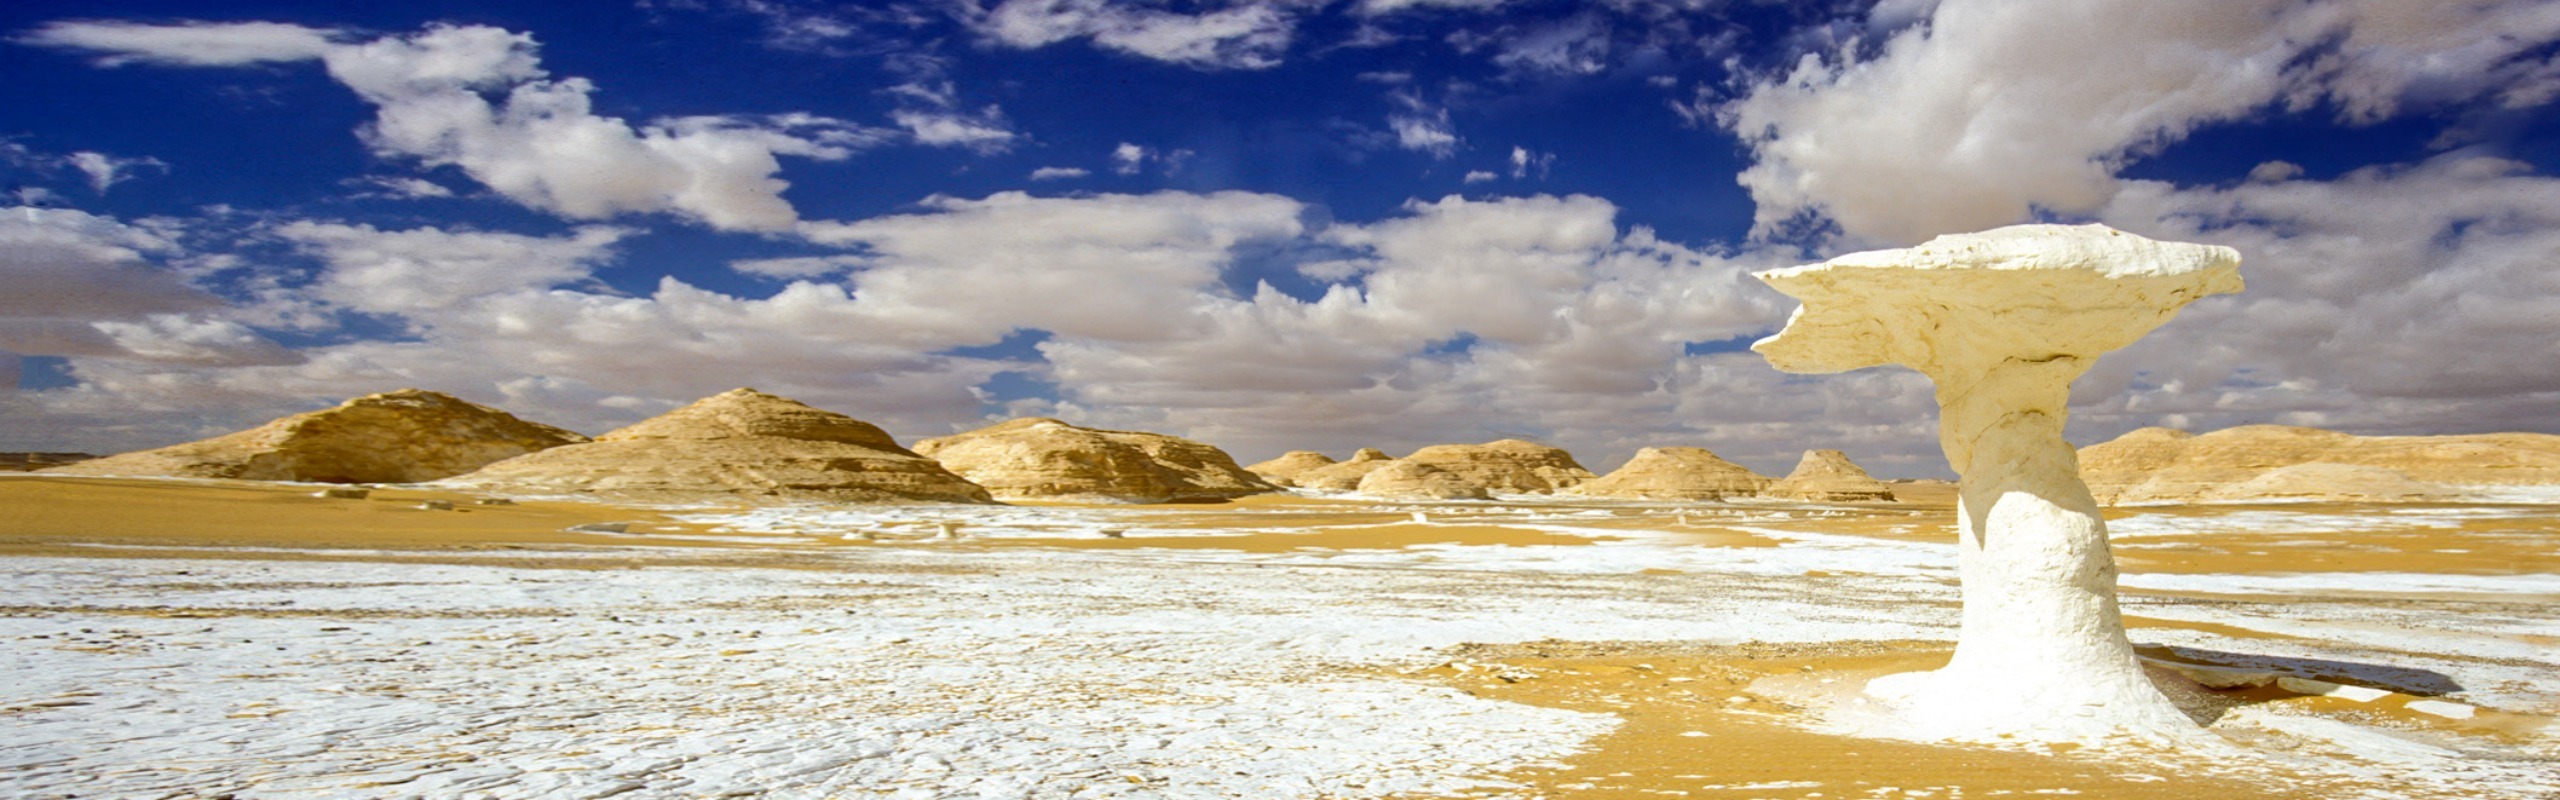 16-Day Grand Egypt Tour with White Desert